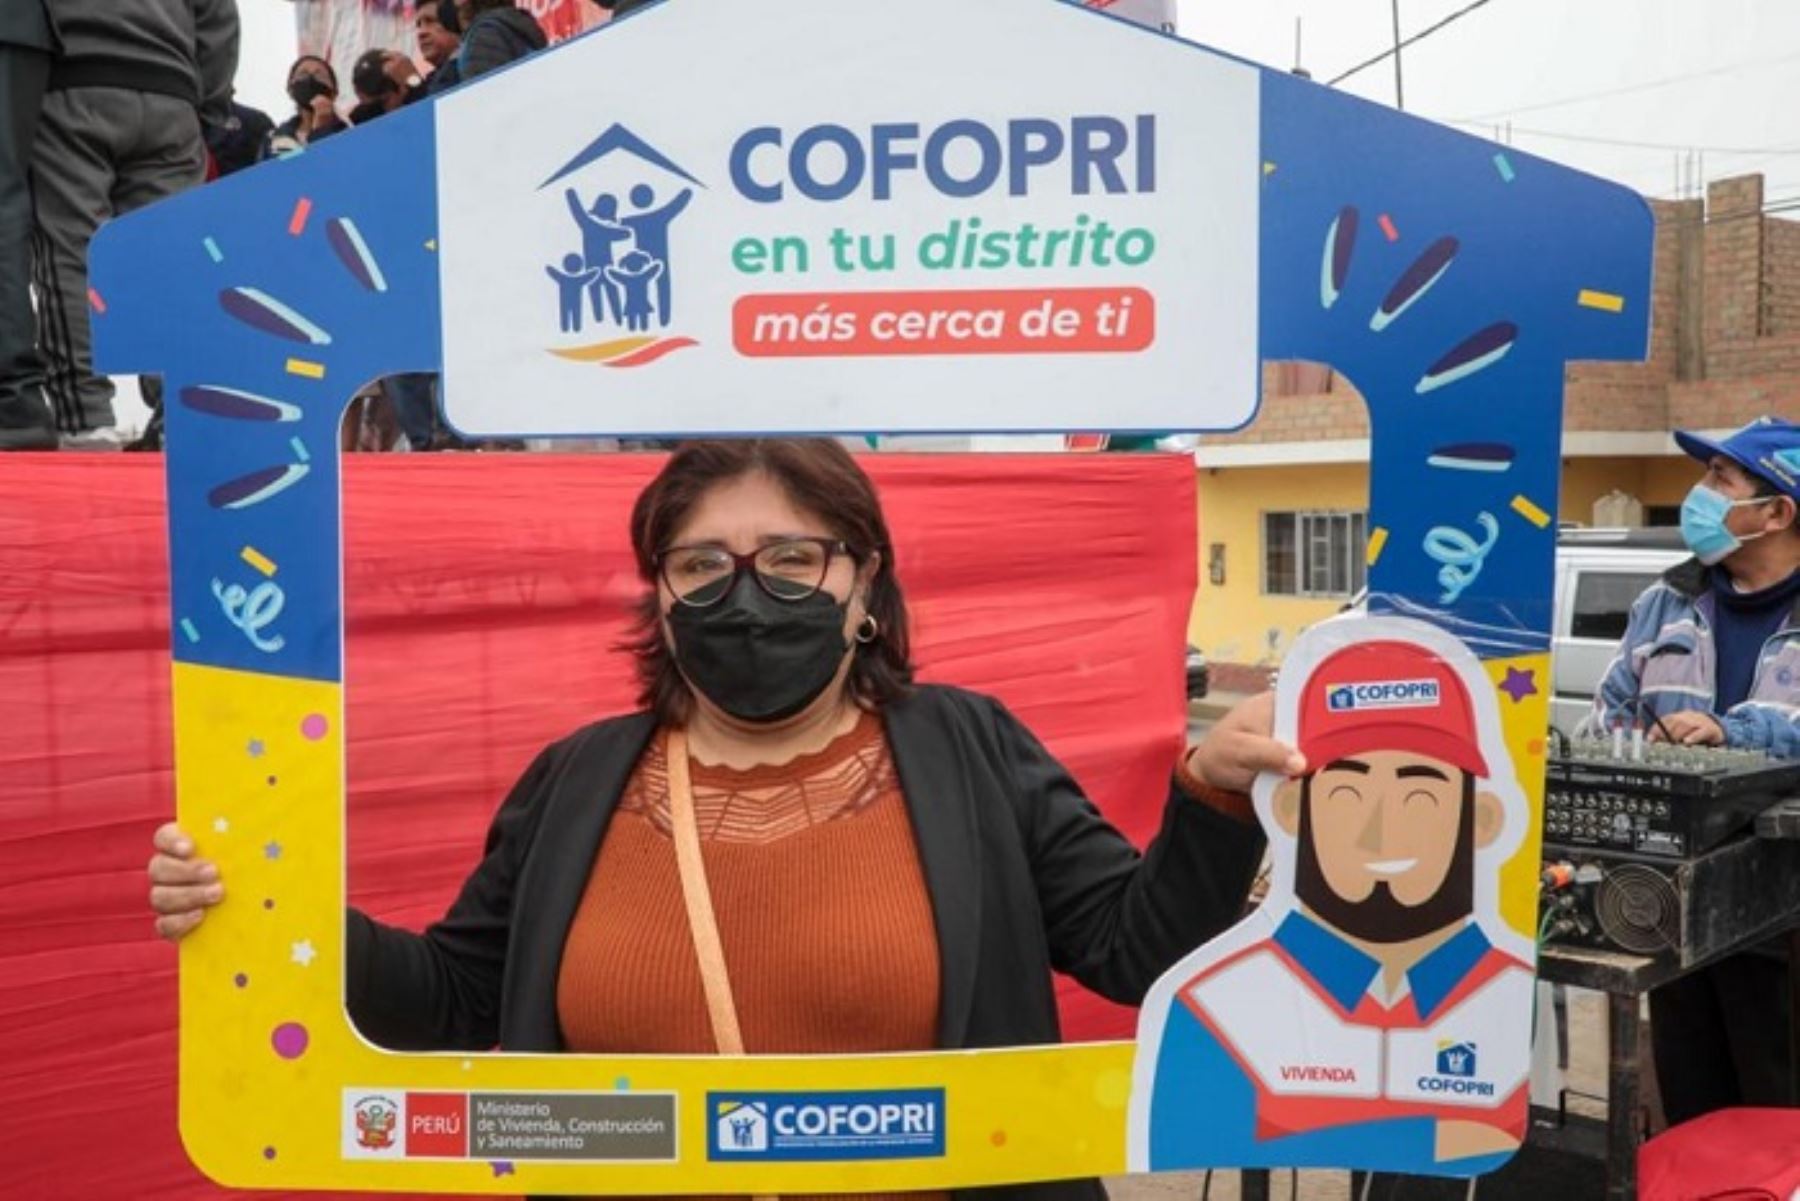 Huaral: campaña "Cofopri en tu distrito" entregó más de 700 títulos de propiedad.